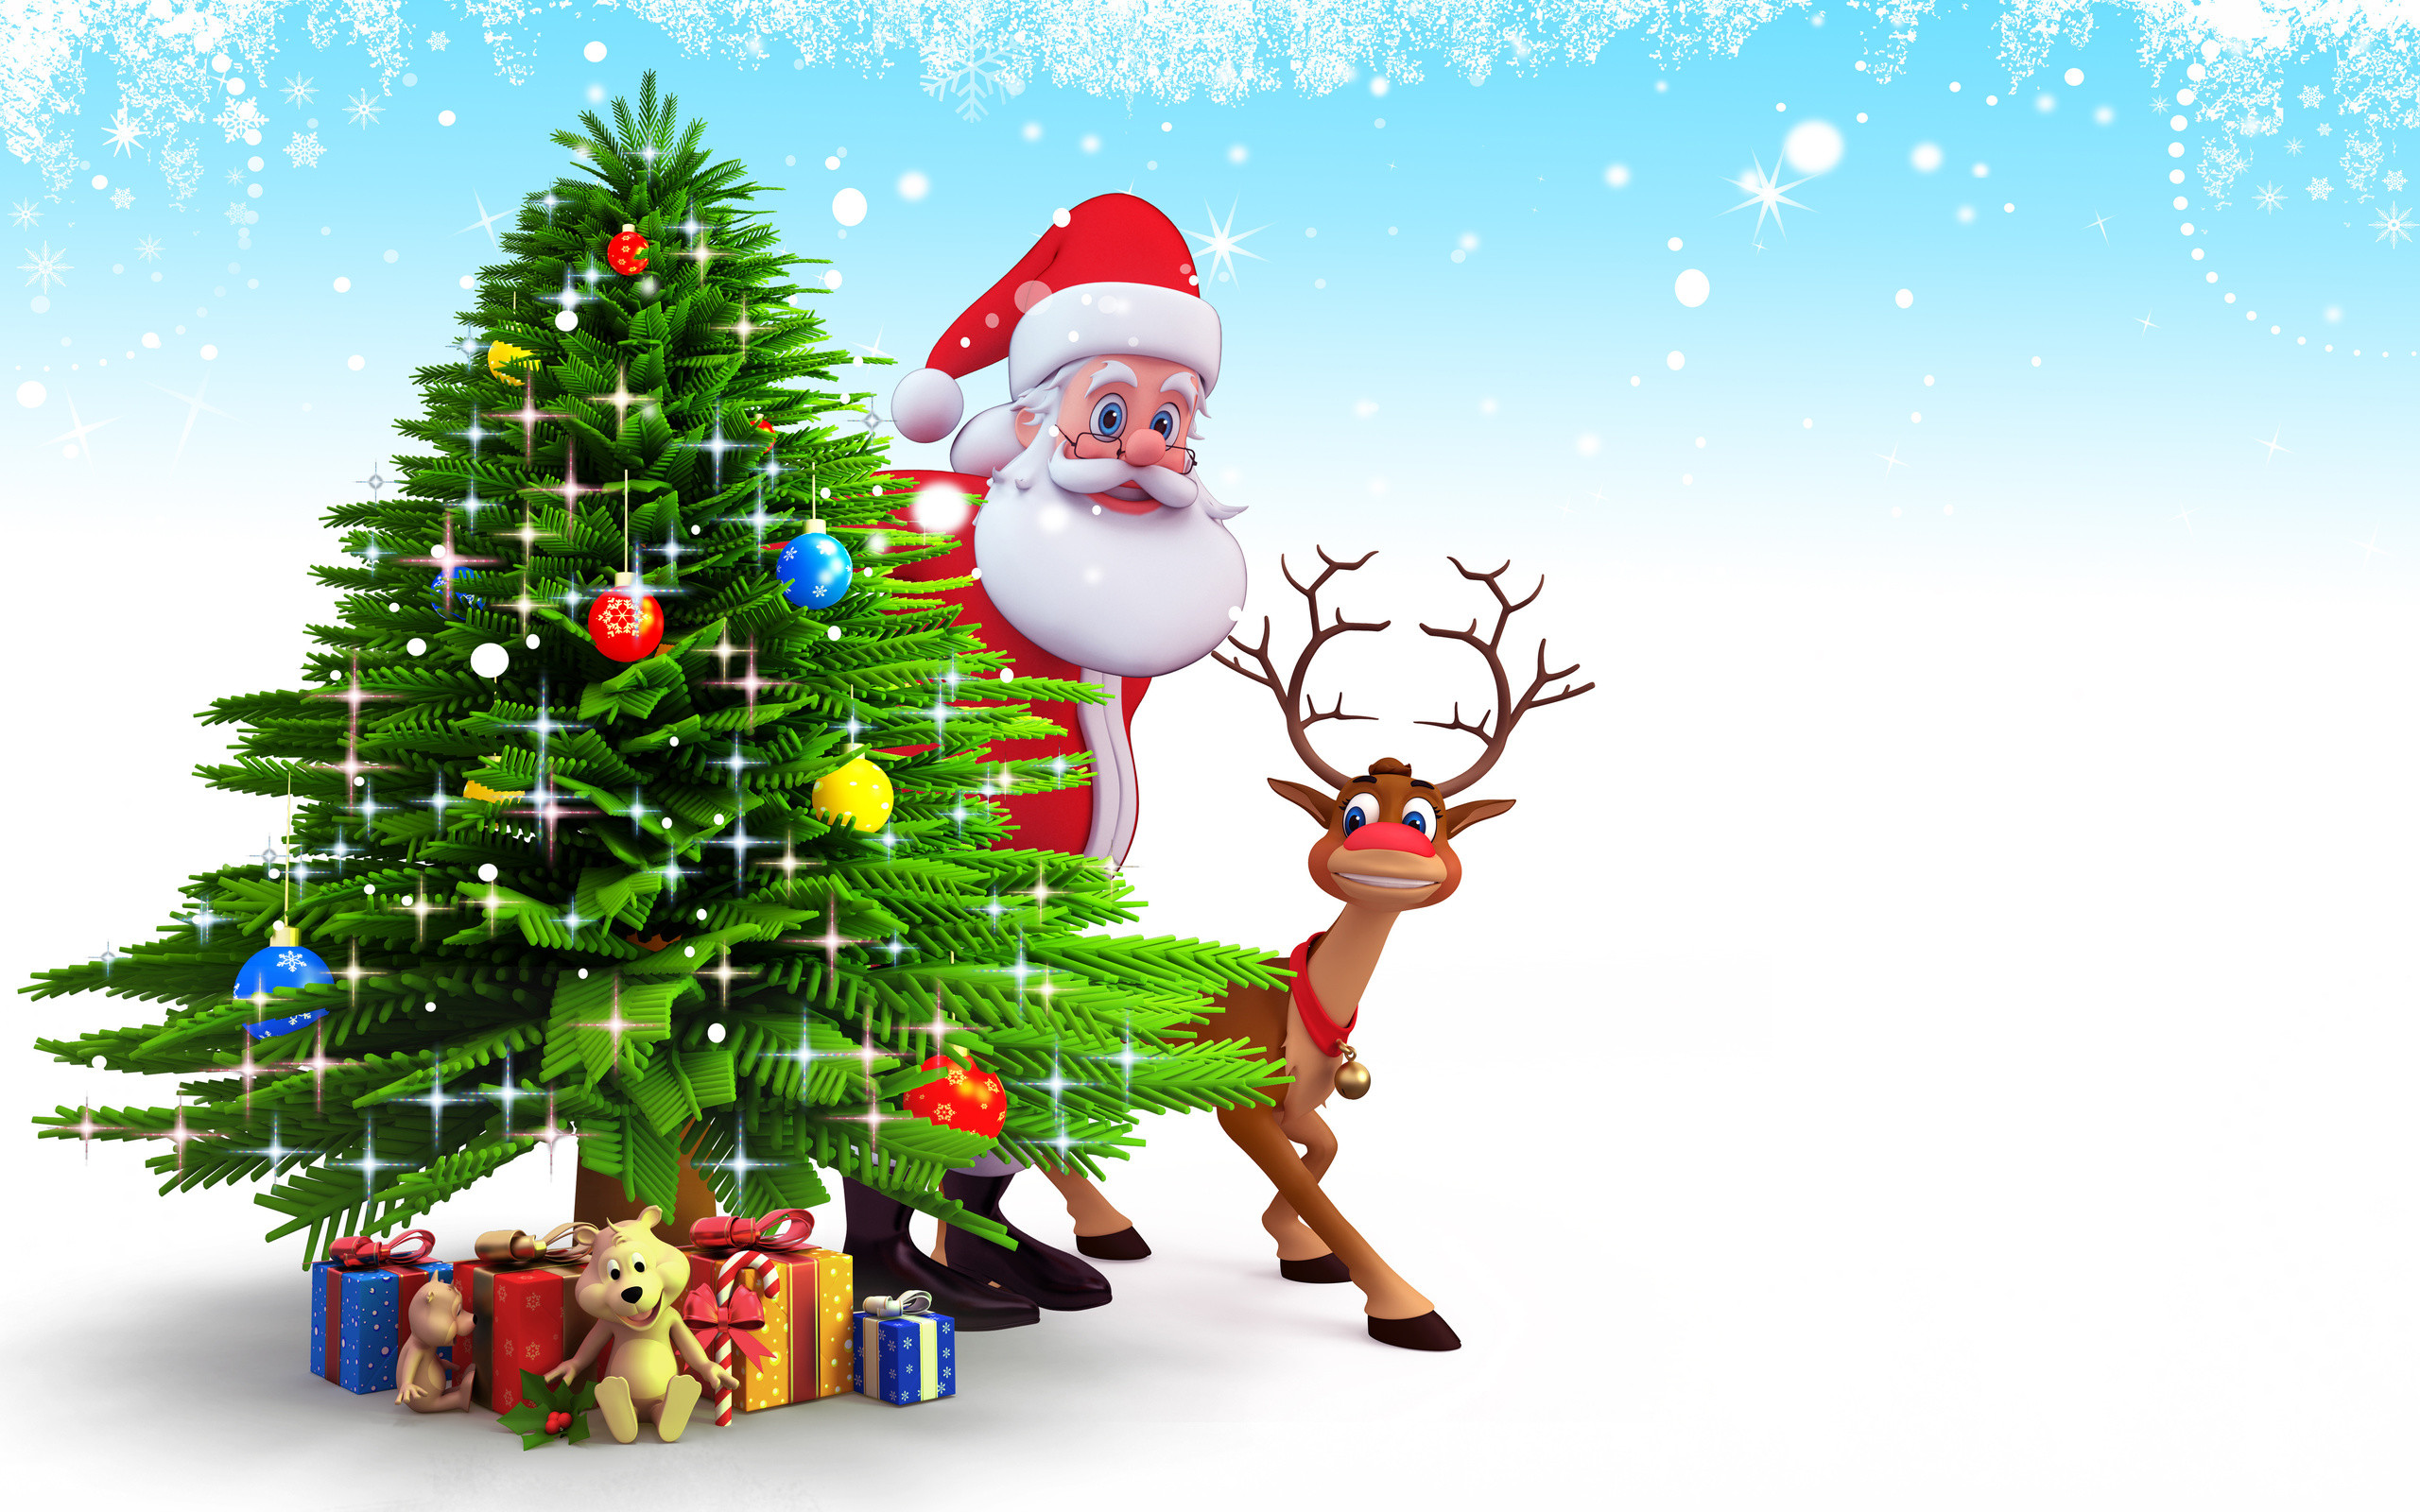 2560x1600 Santa Claus And Reindeer behind christmas tree and gifts Christmas Santa  claus wallpapers